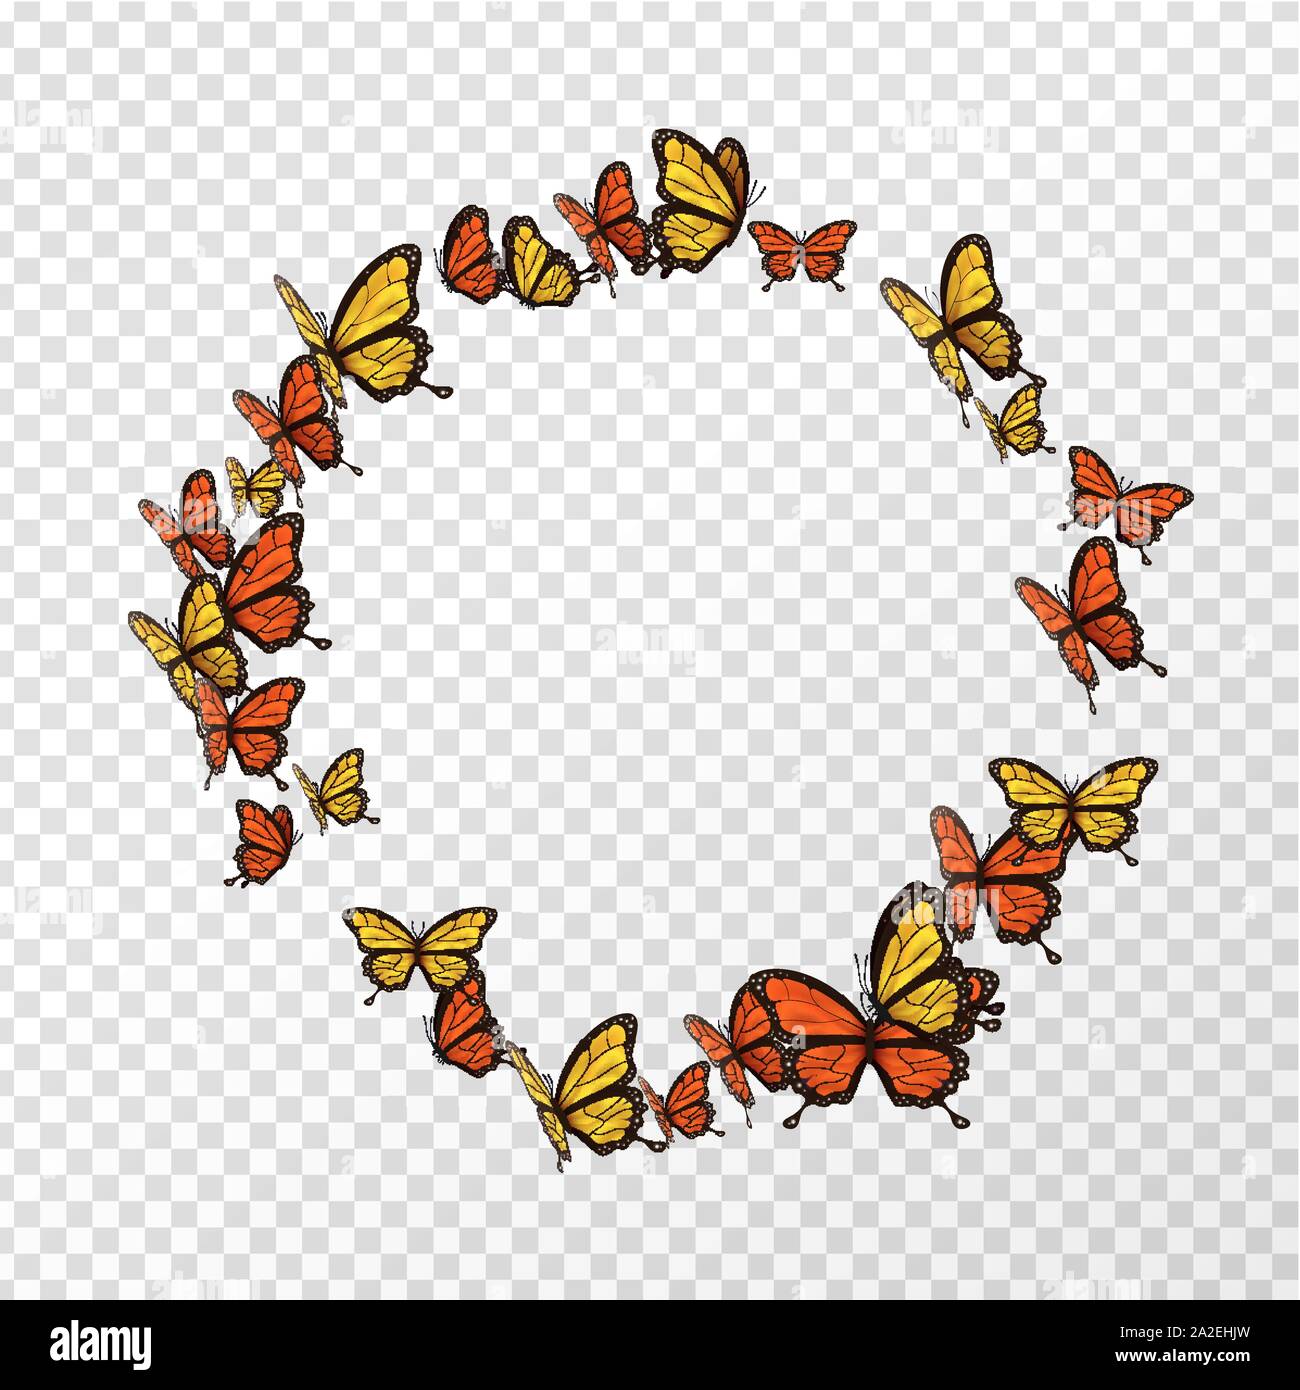 Arancio e Giallo farfalla telaio circolare su sfondo trasparente con copia spazio. Turno isolato farfalle volare. Illustrazione Vettoriale